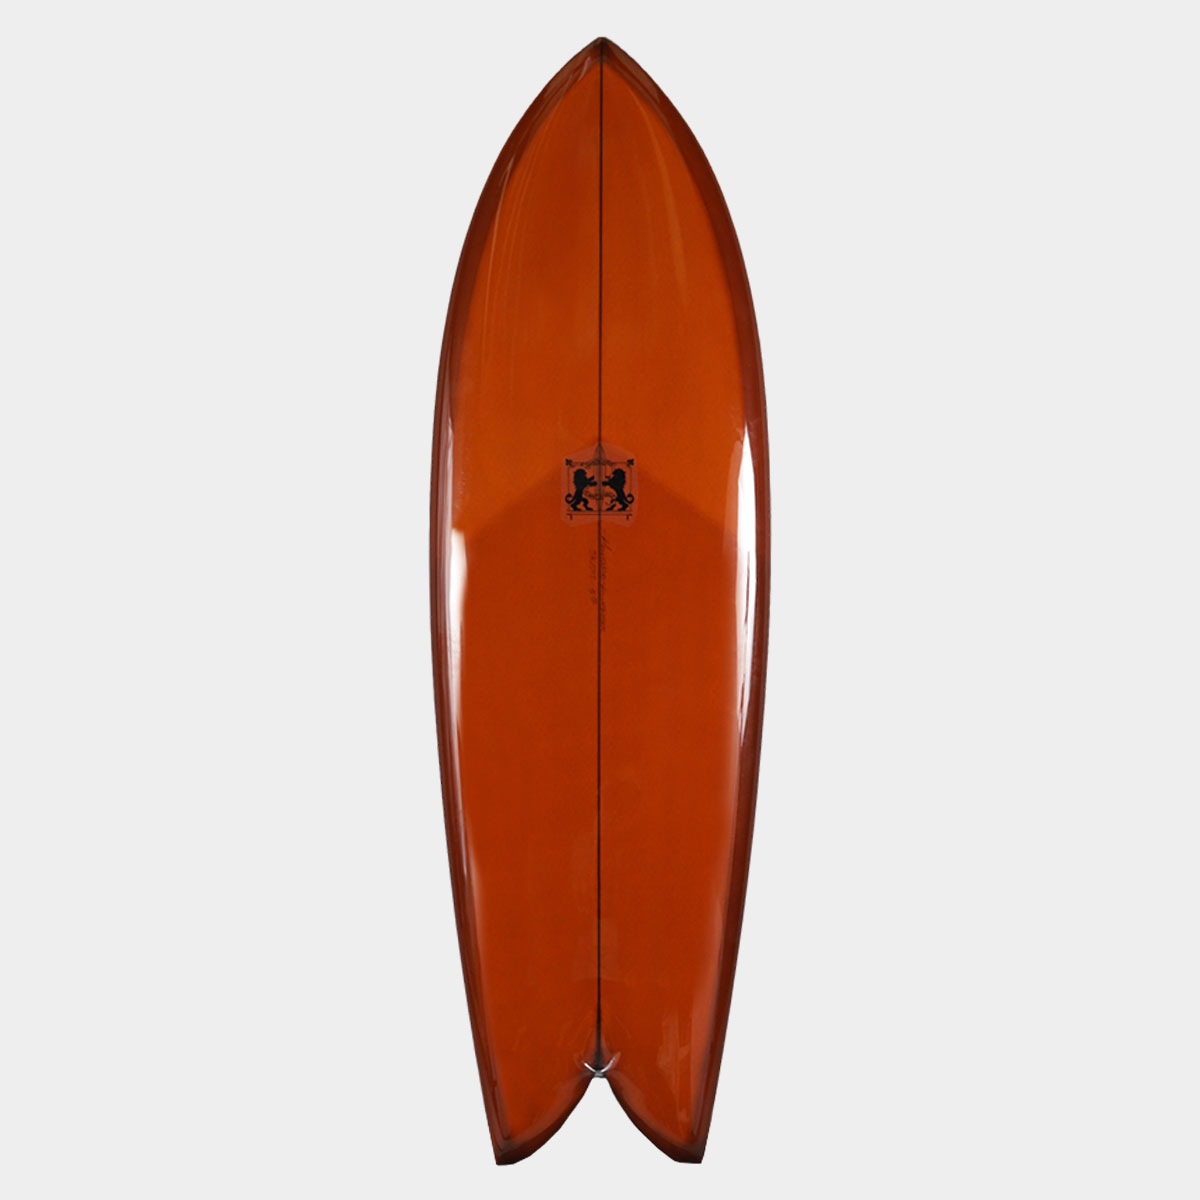 ラリーメイビル サーフボード クラッシック フィッシュ 5'10 サーフィン オンフィン ツインフィン surfboards LARRY MABILE FISH 5.10【jk2303】